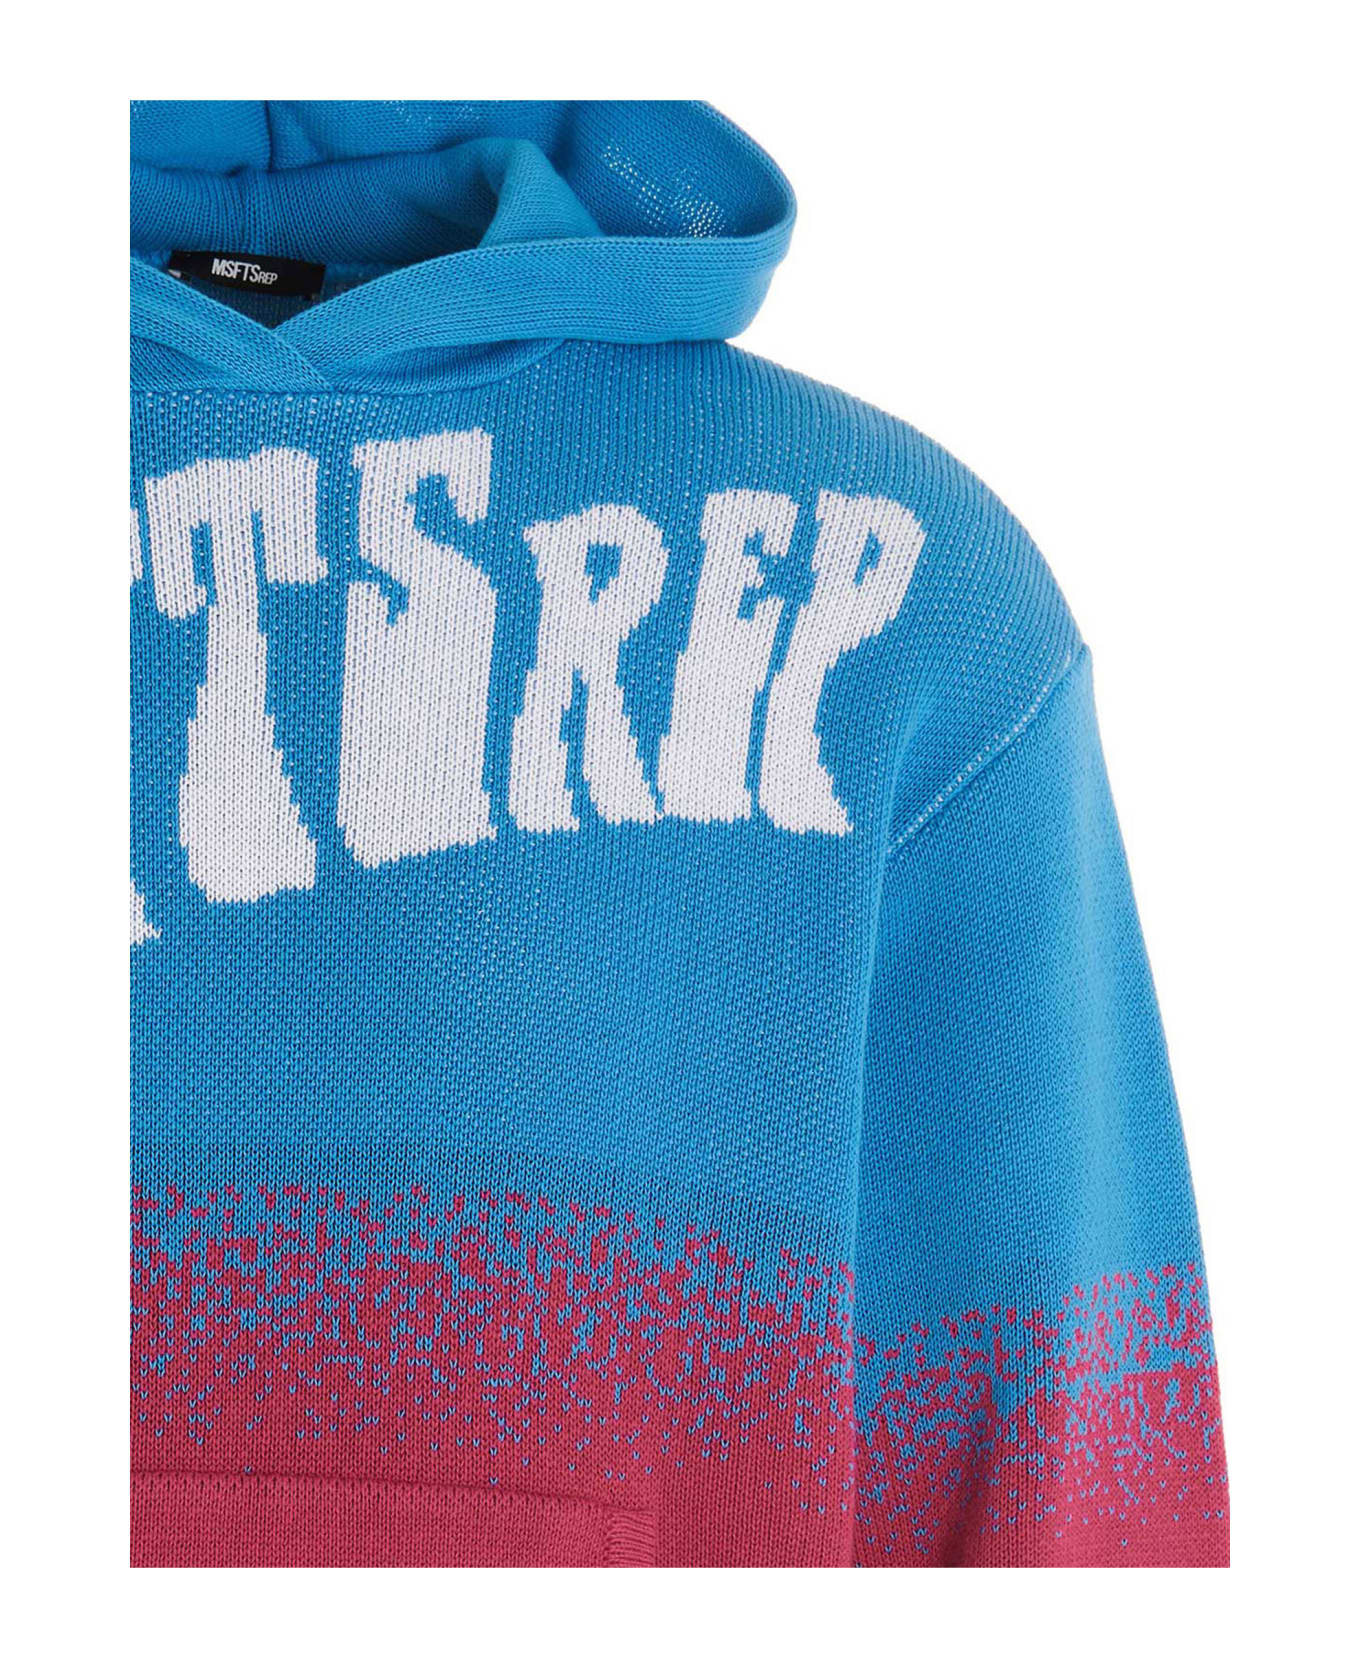 MSFTSrep Logo Hooded Sweater - Multicolor フリース